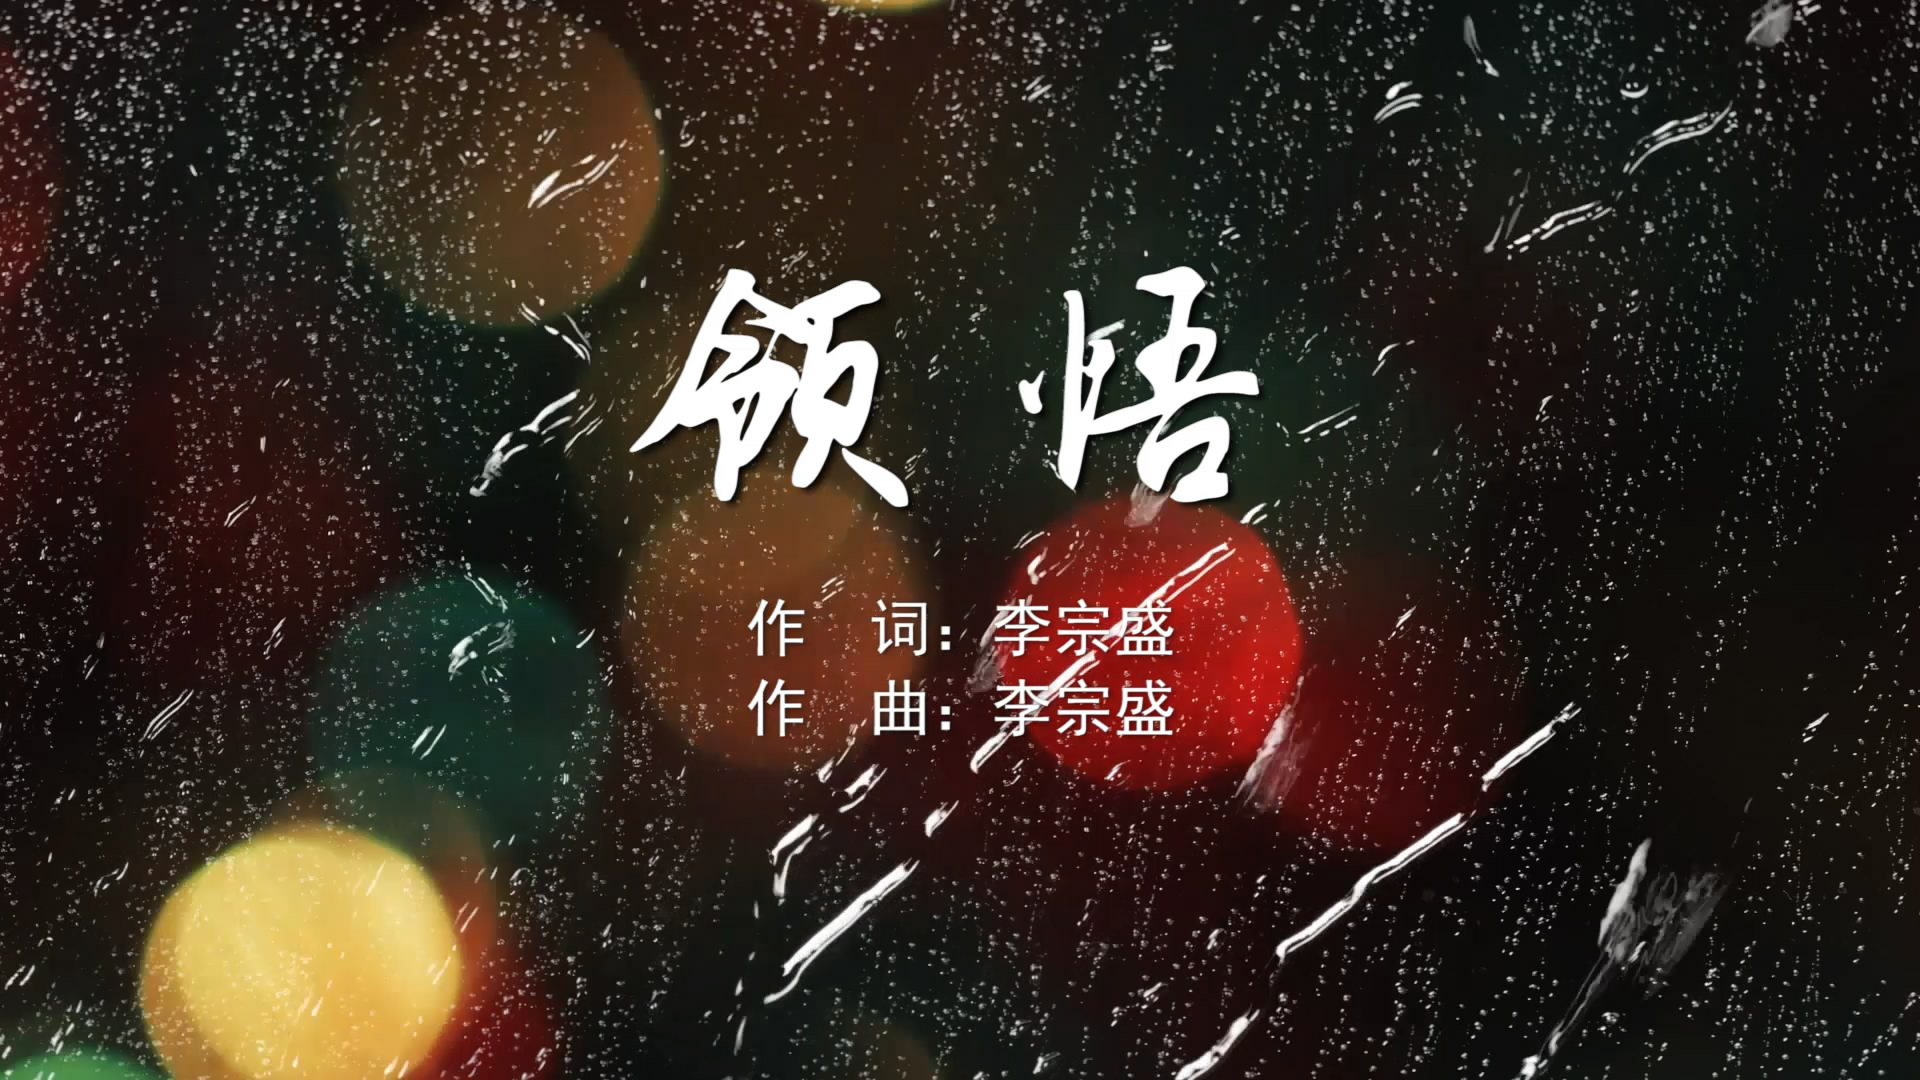 领悟 辛晓琪MV字幕配乐伴奏舞台演出LED背景大屏幕视频素材TV